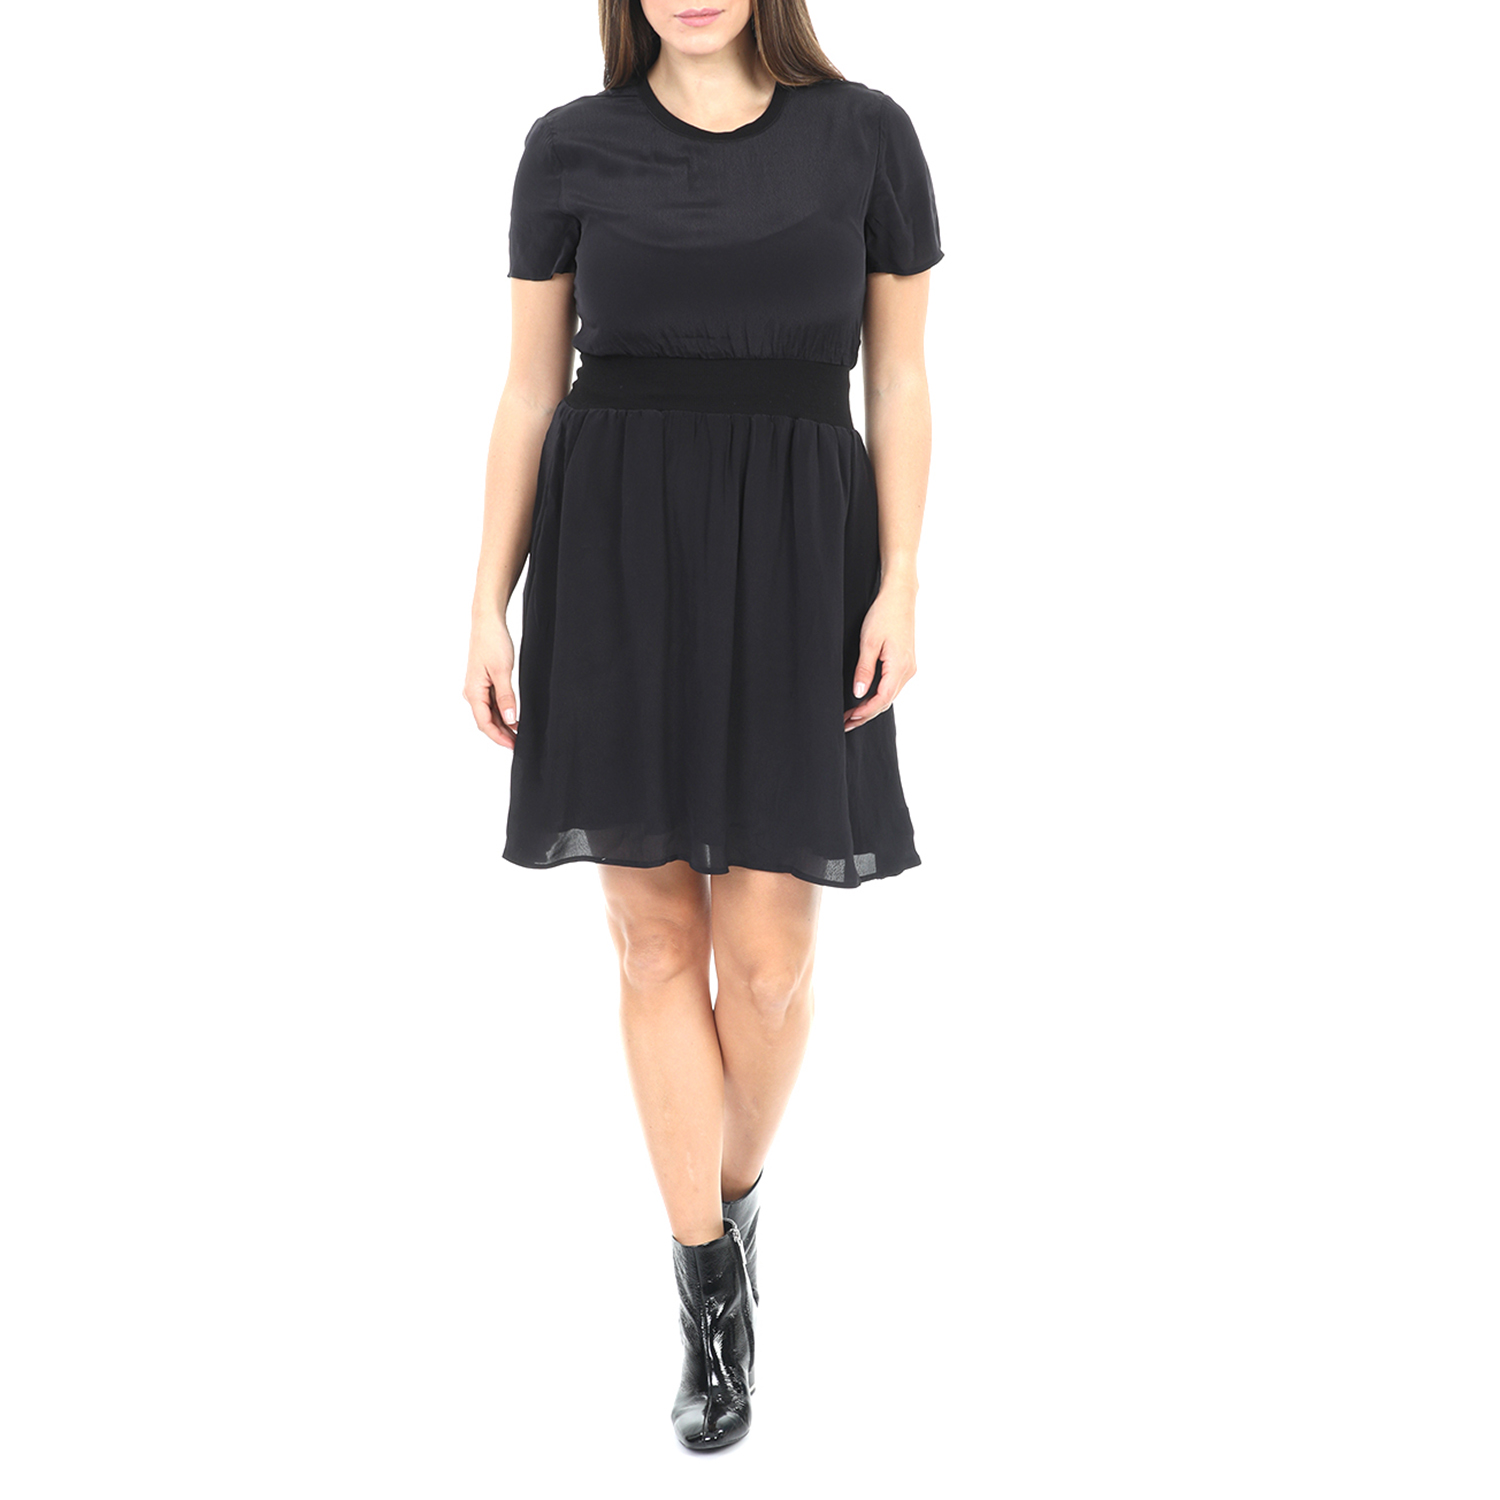 Γυναικεία/Ρούχα/Φορέματα/Μίνι CALVIN KLEIN JEANS - Γυναικείο μίνι φόρεμα CALVIN KLEIN JEANS FAUX SILK FIT AND FLARE μαύρο